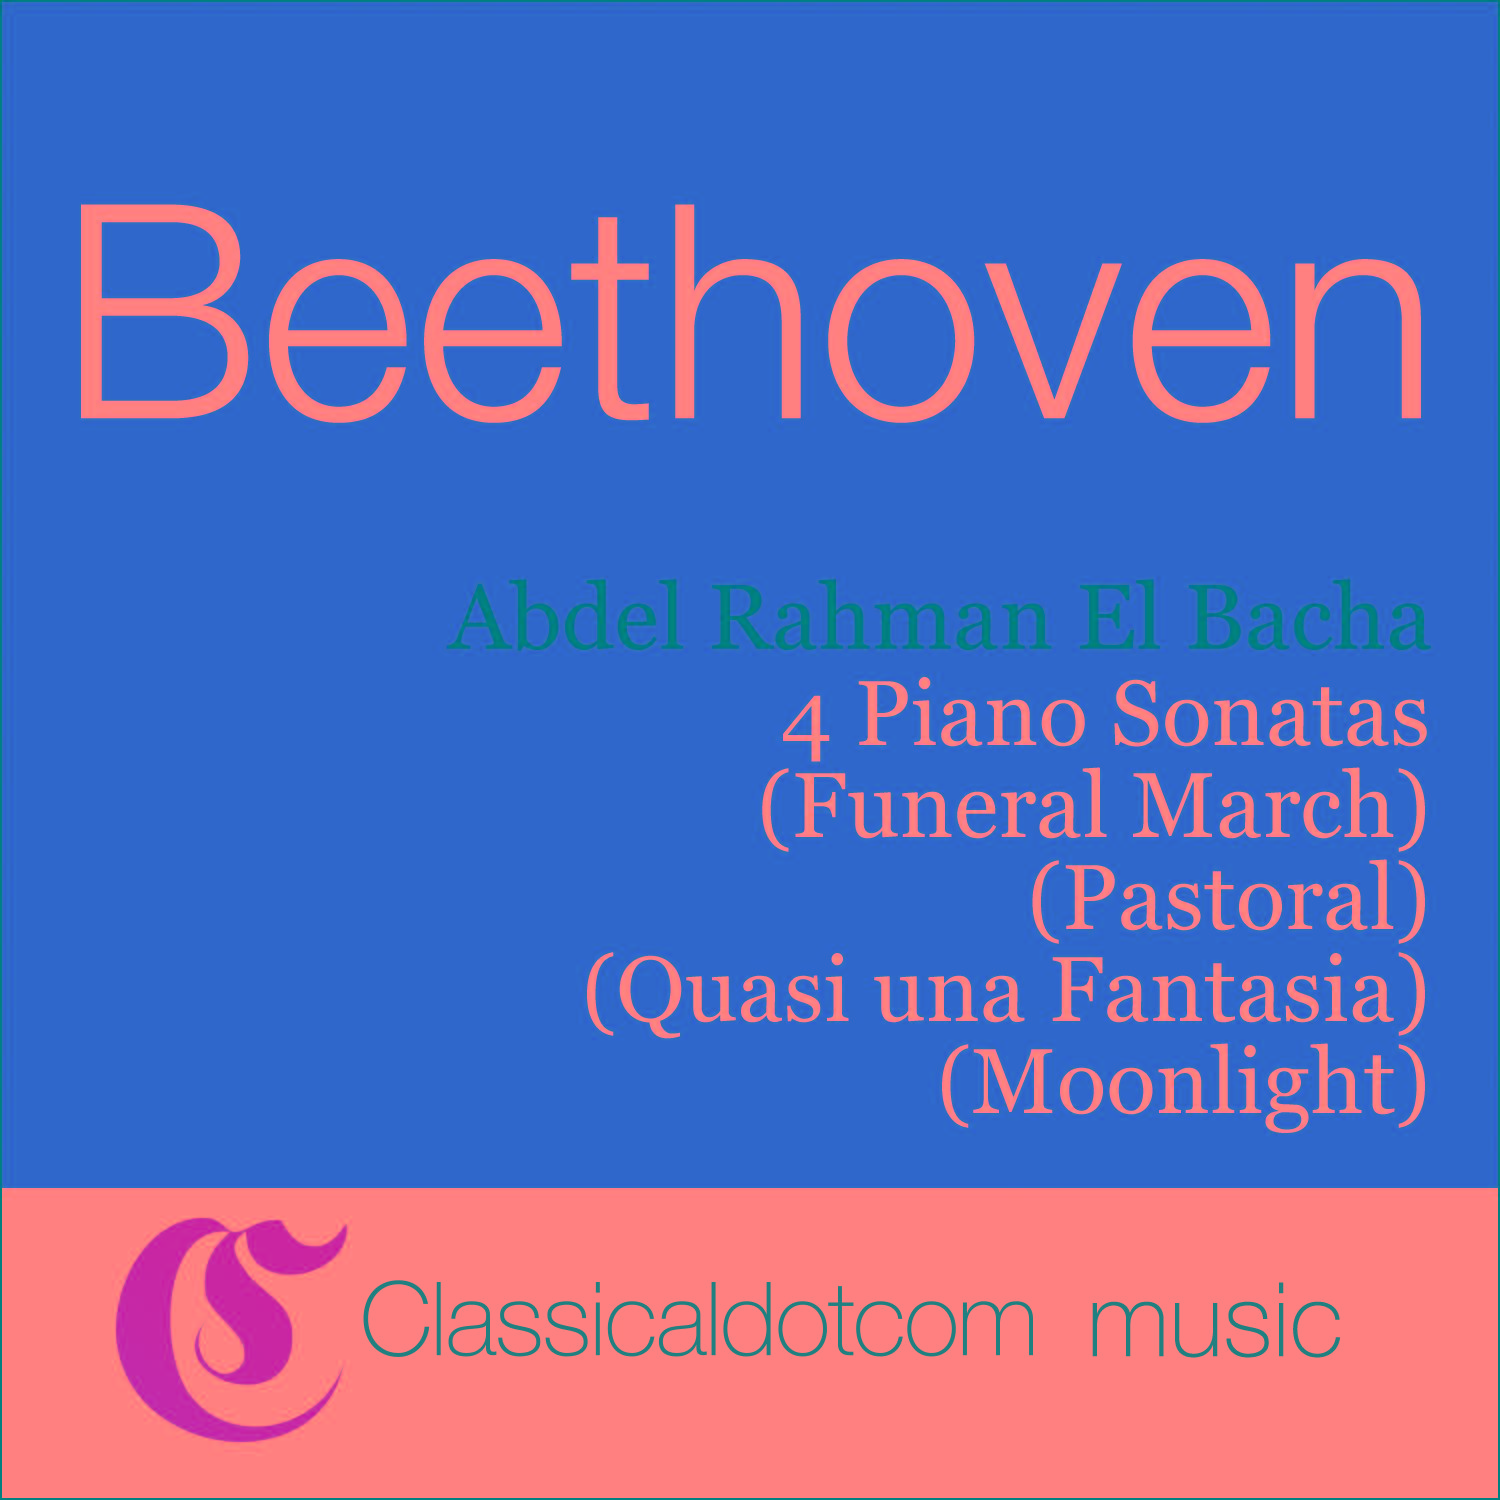 Piano Sonata No. 13 in E flat, Op. 27 No. 1 (Quasi una Fantasia) - Adagio con espressione - Allegro vivace - Presto - Tempo 1